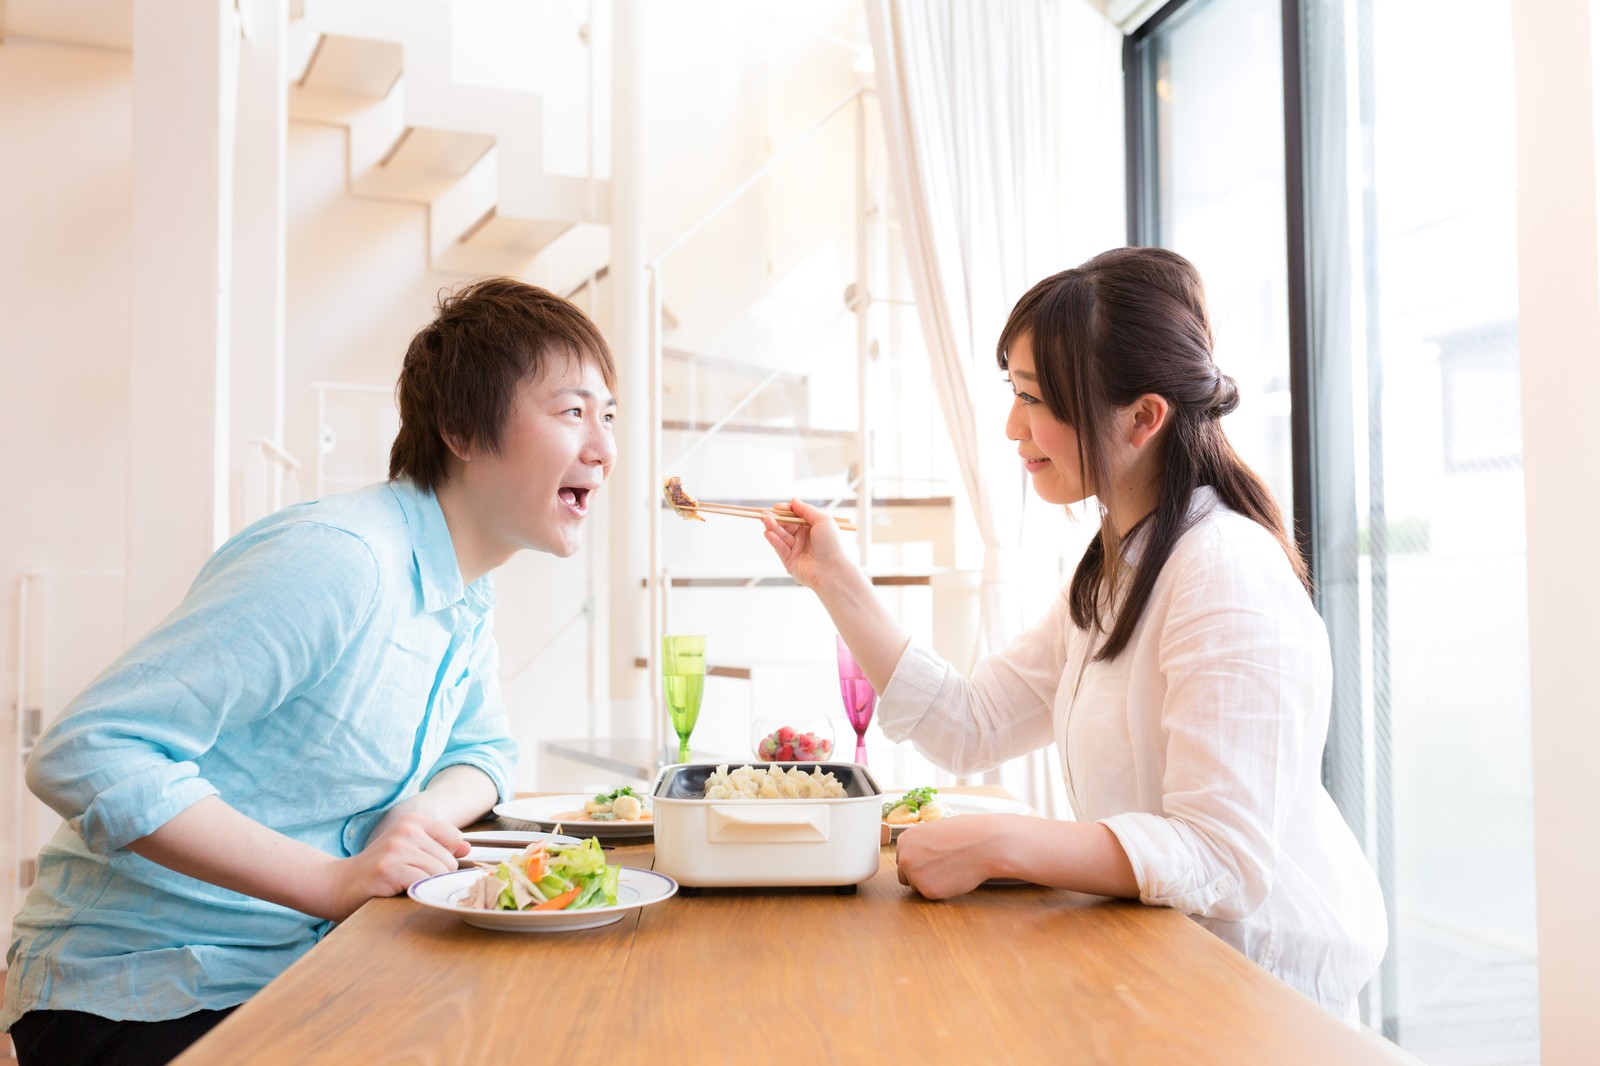 Casais do Japão que querem experimentar morar juntos, agora podem alugar apartamentos por apenas uma semana